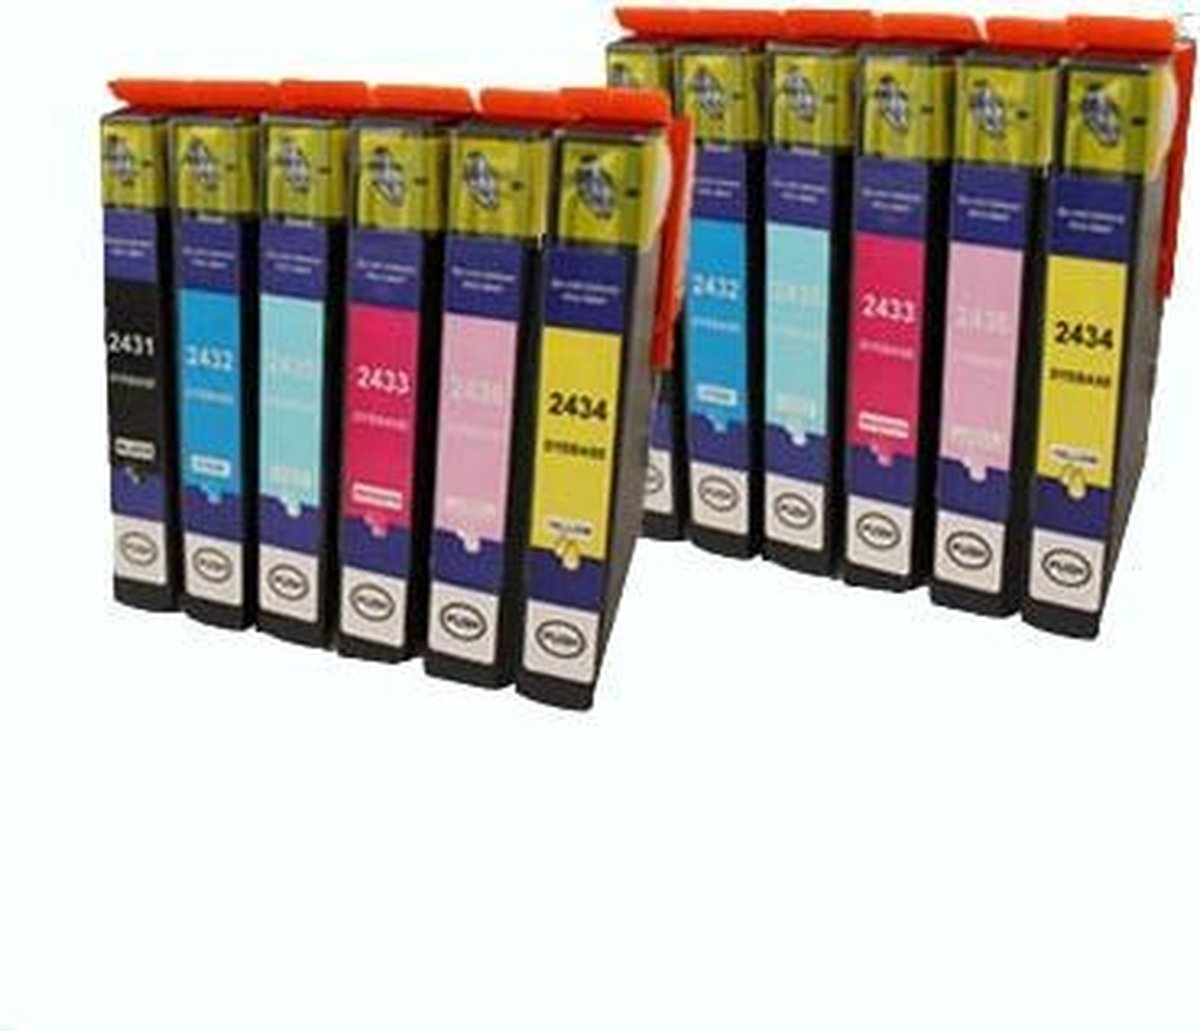 ACTIE: Epson T0807 inkt cartridge multipack (2 x 6 -pack) - Huismerk